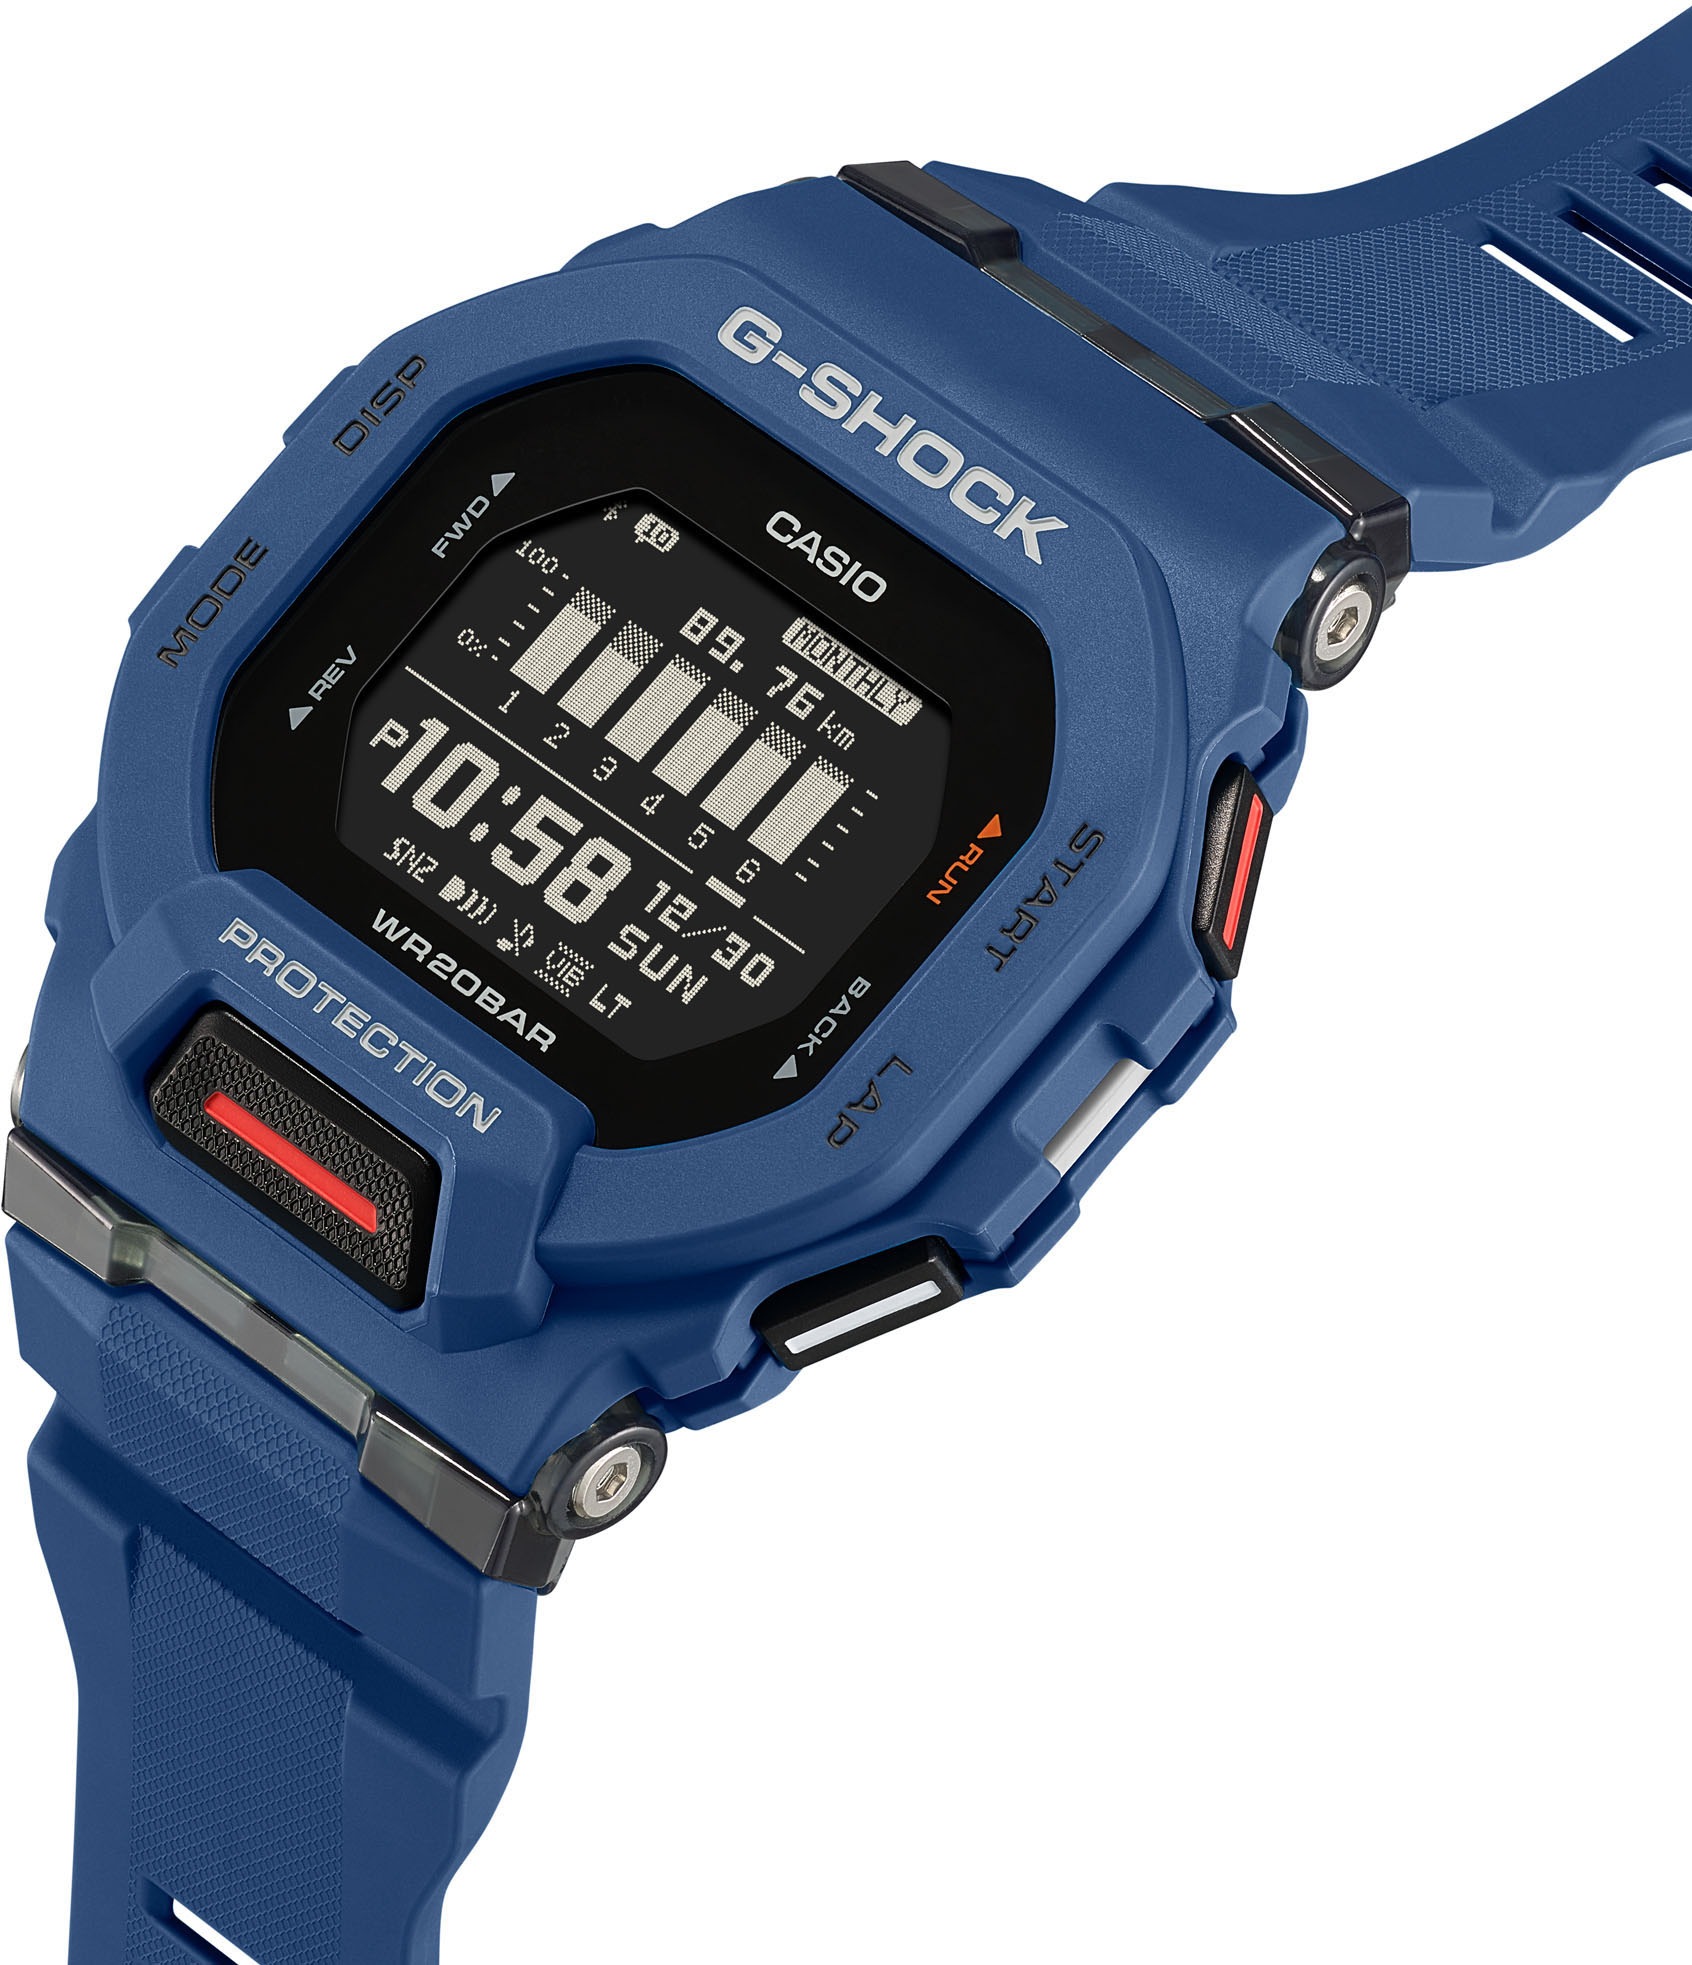 CASIO G-SHOCK Smartwatch »GBD-200-2ER«